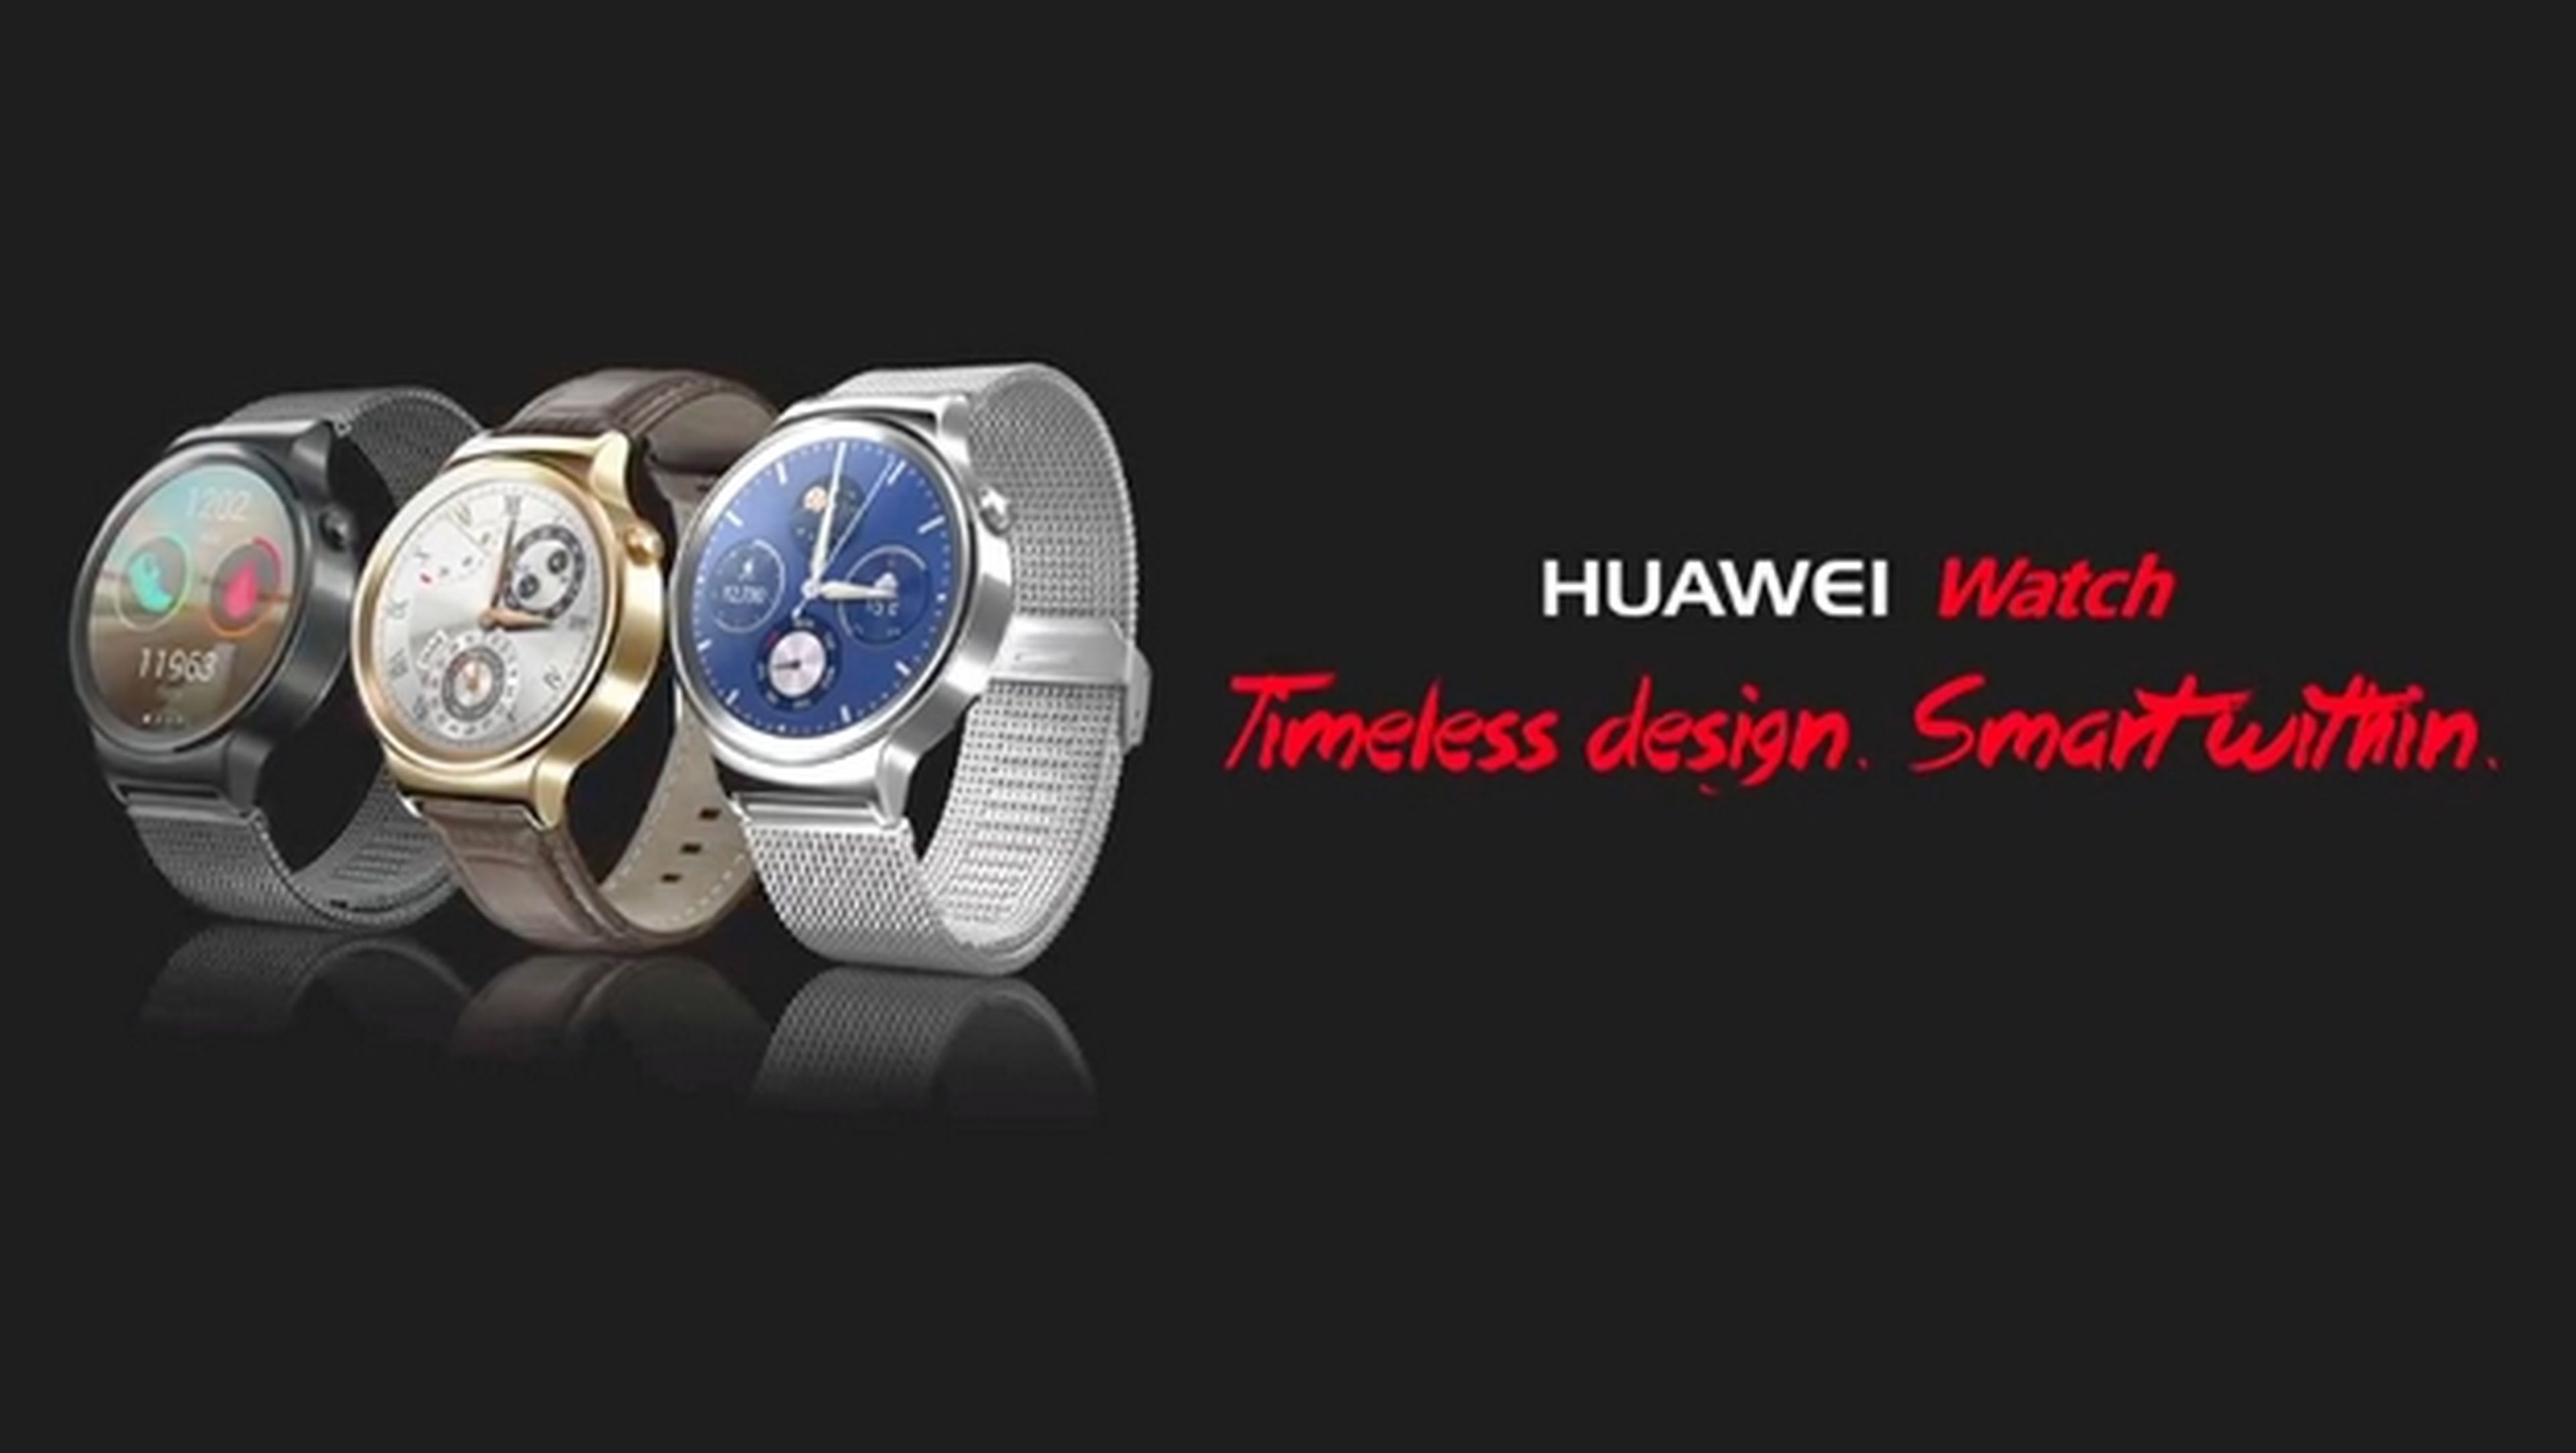 Huawei Watch desvelado en dos vídeos antes del MWC 2015.